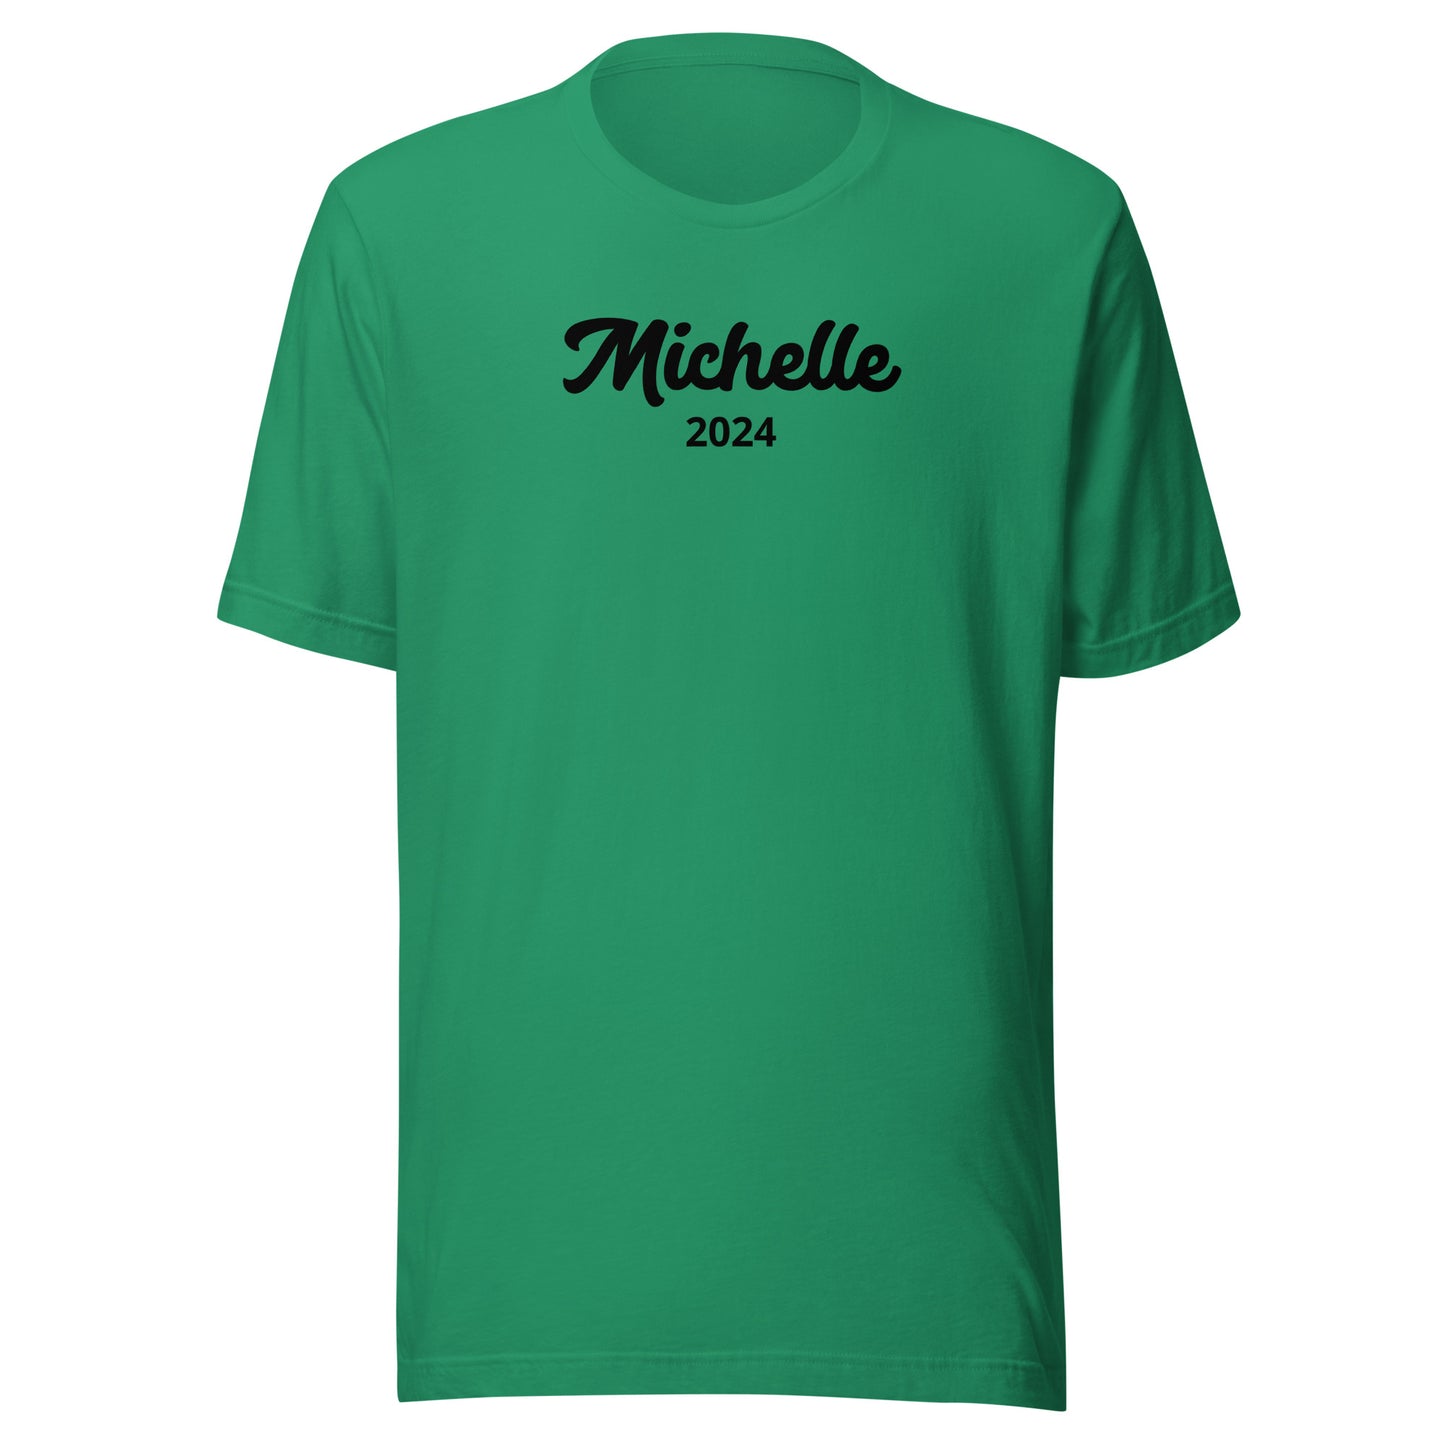 Michelle 2024